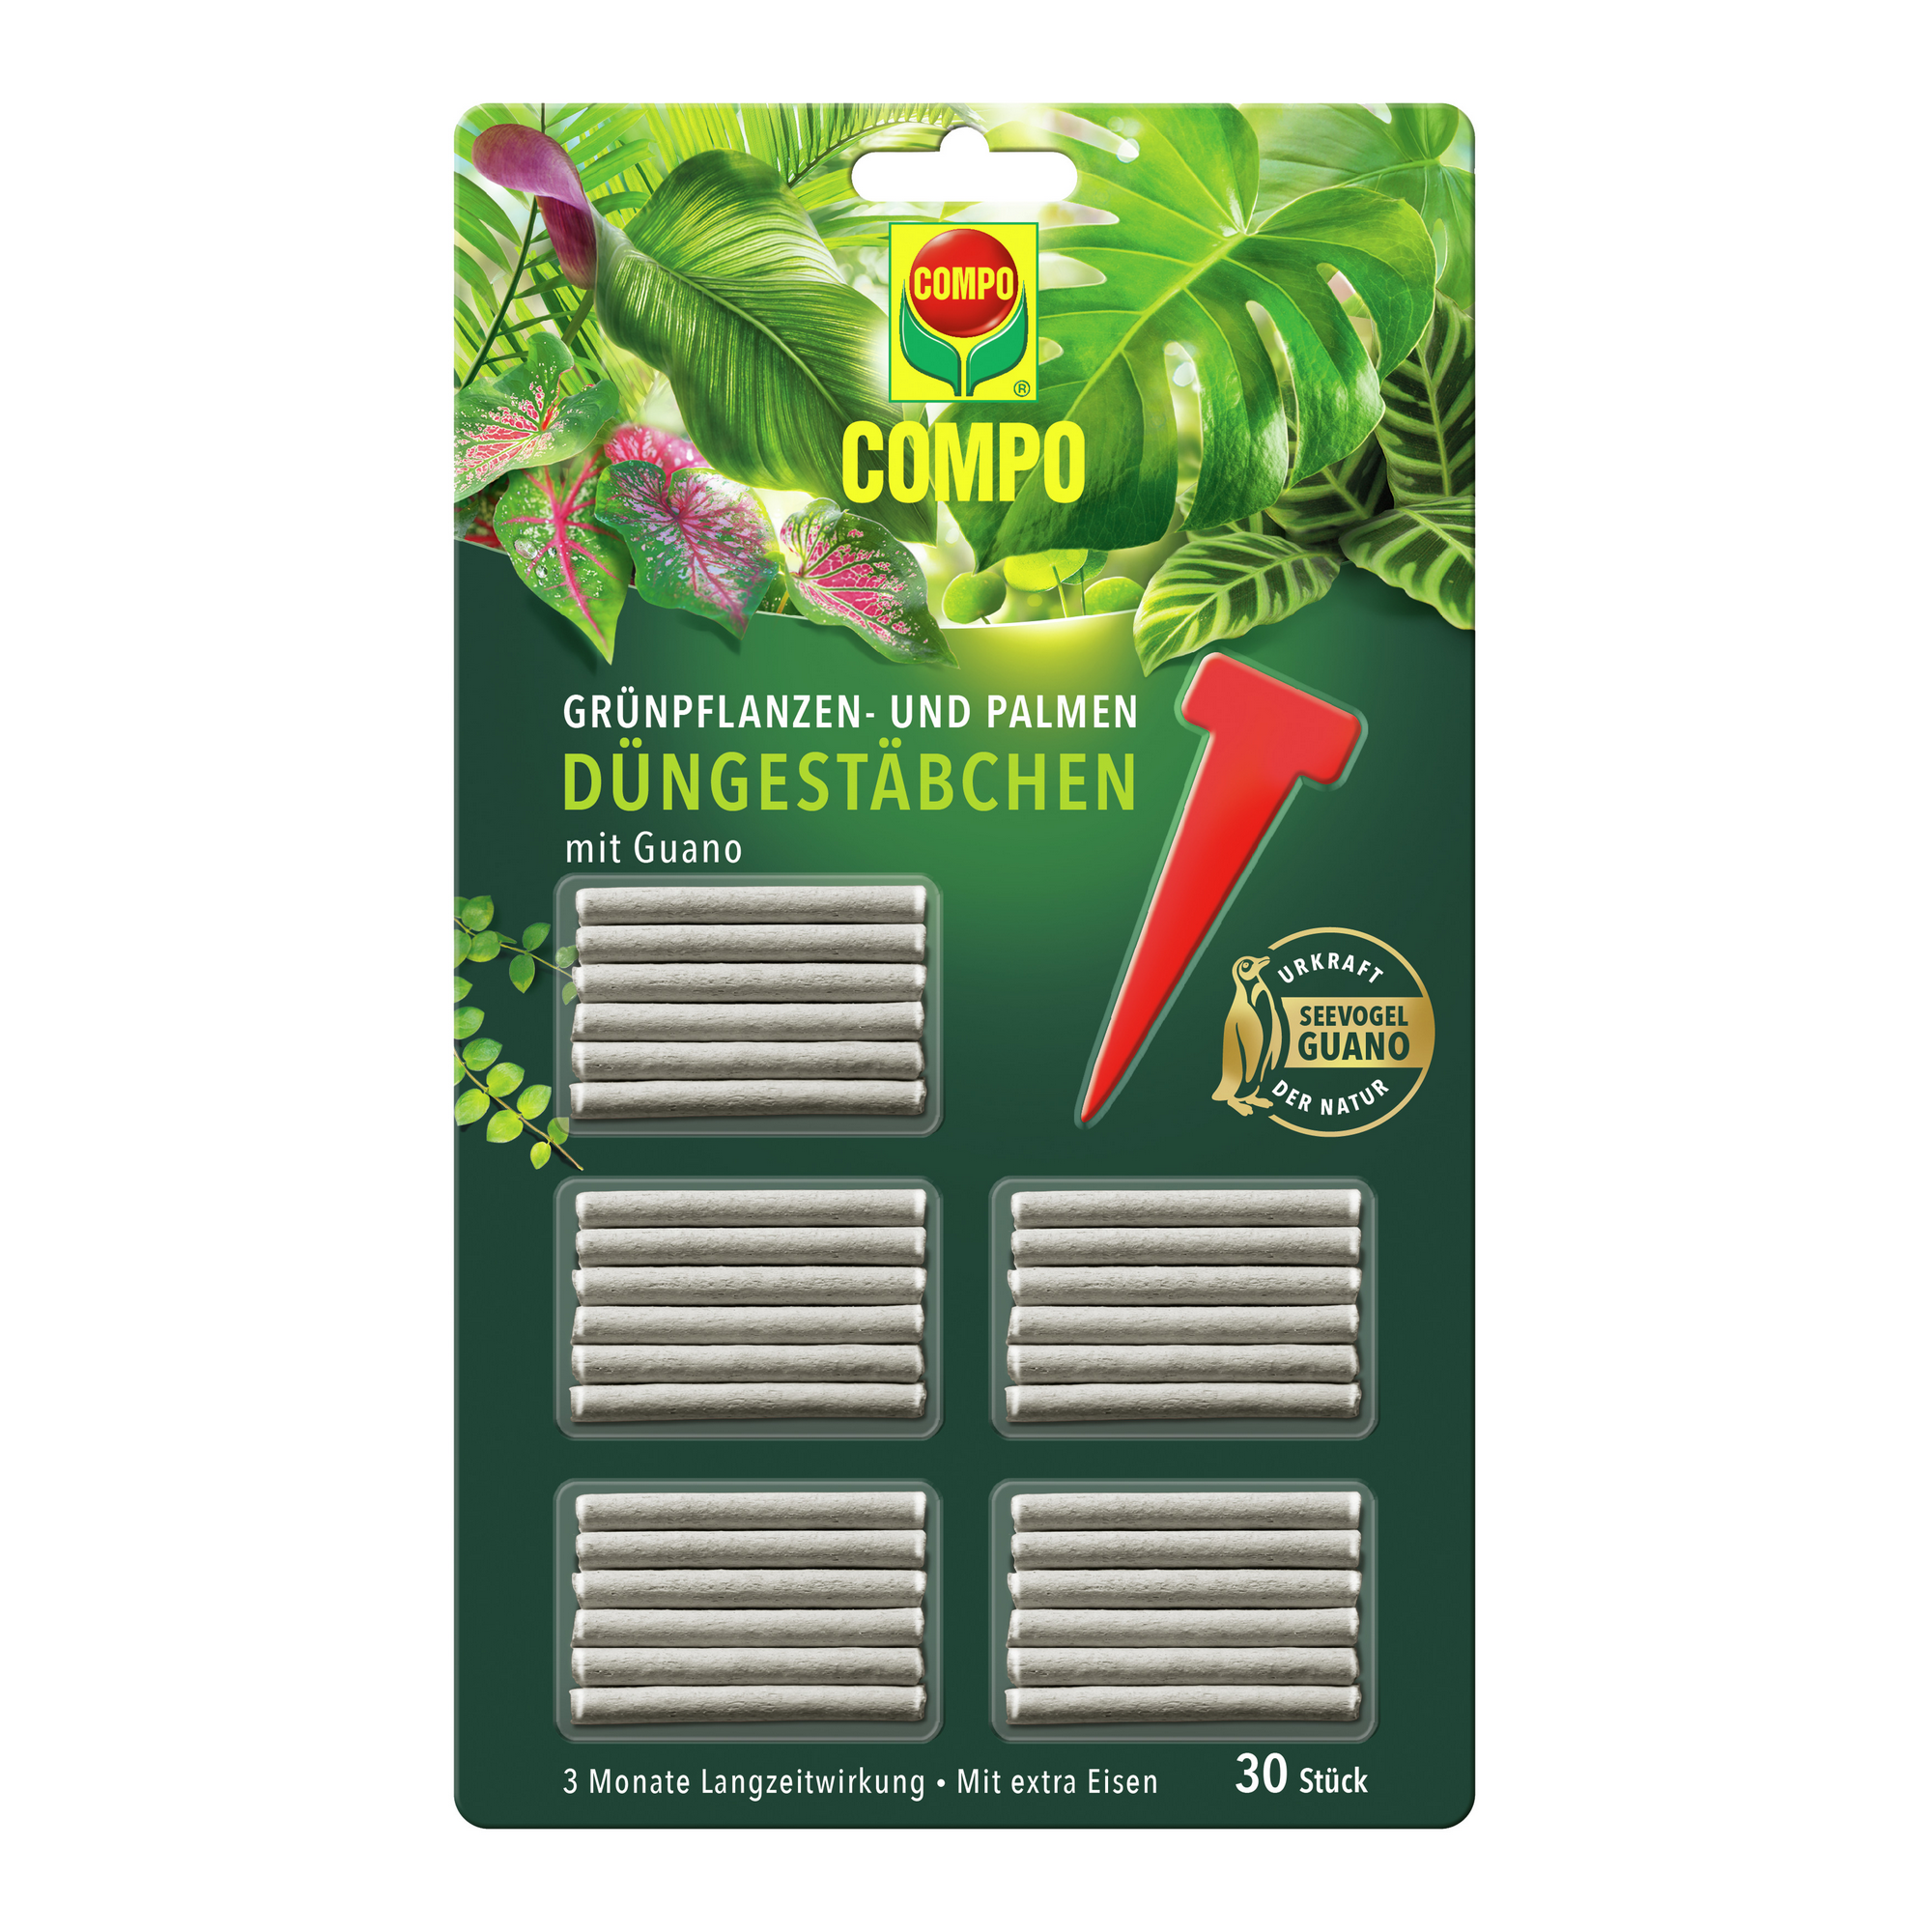 Grünpflanzen- und Palmen-Düngestäbchen mit Guano 30 Stück + product picture